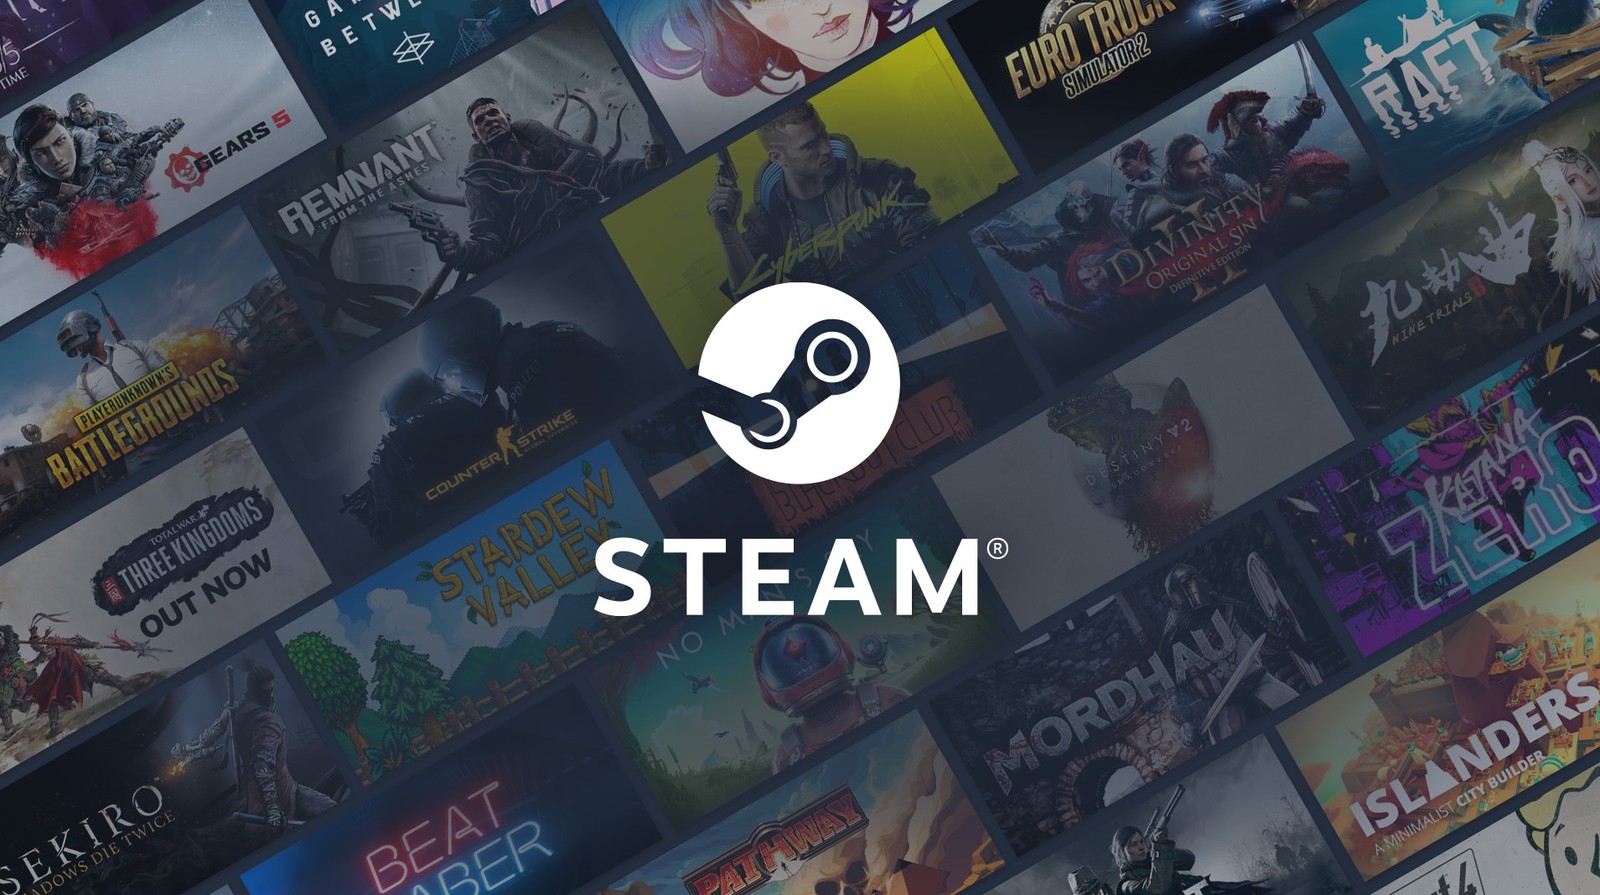 Tanie gry wylatują ze Steama. Platforma zaprezentowała nowe ograniczenia cenowe